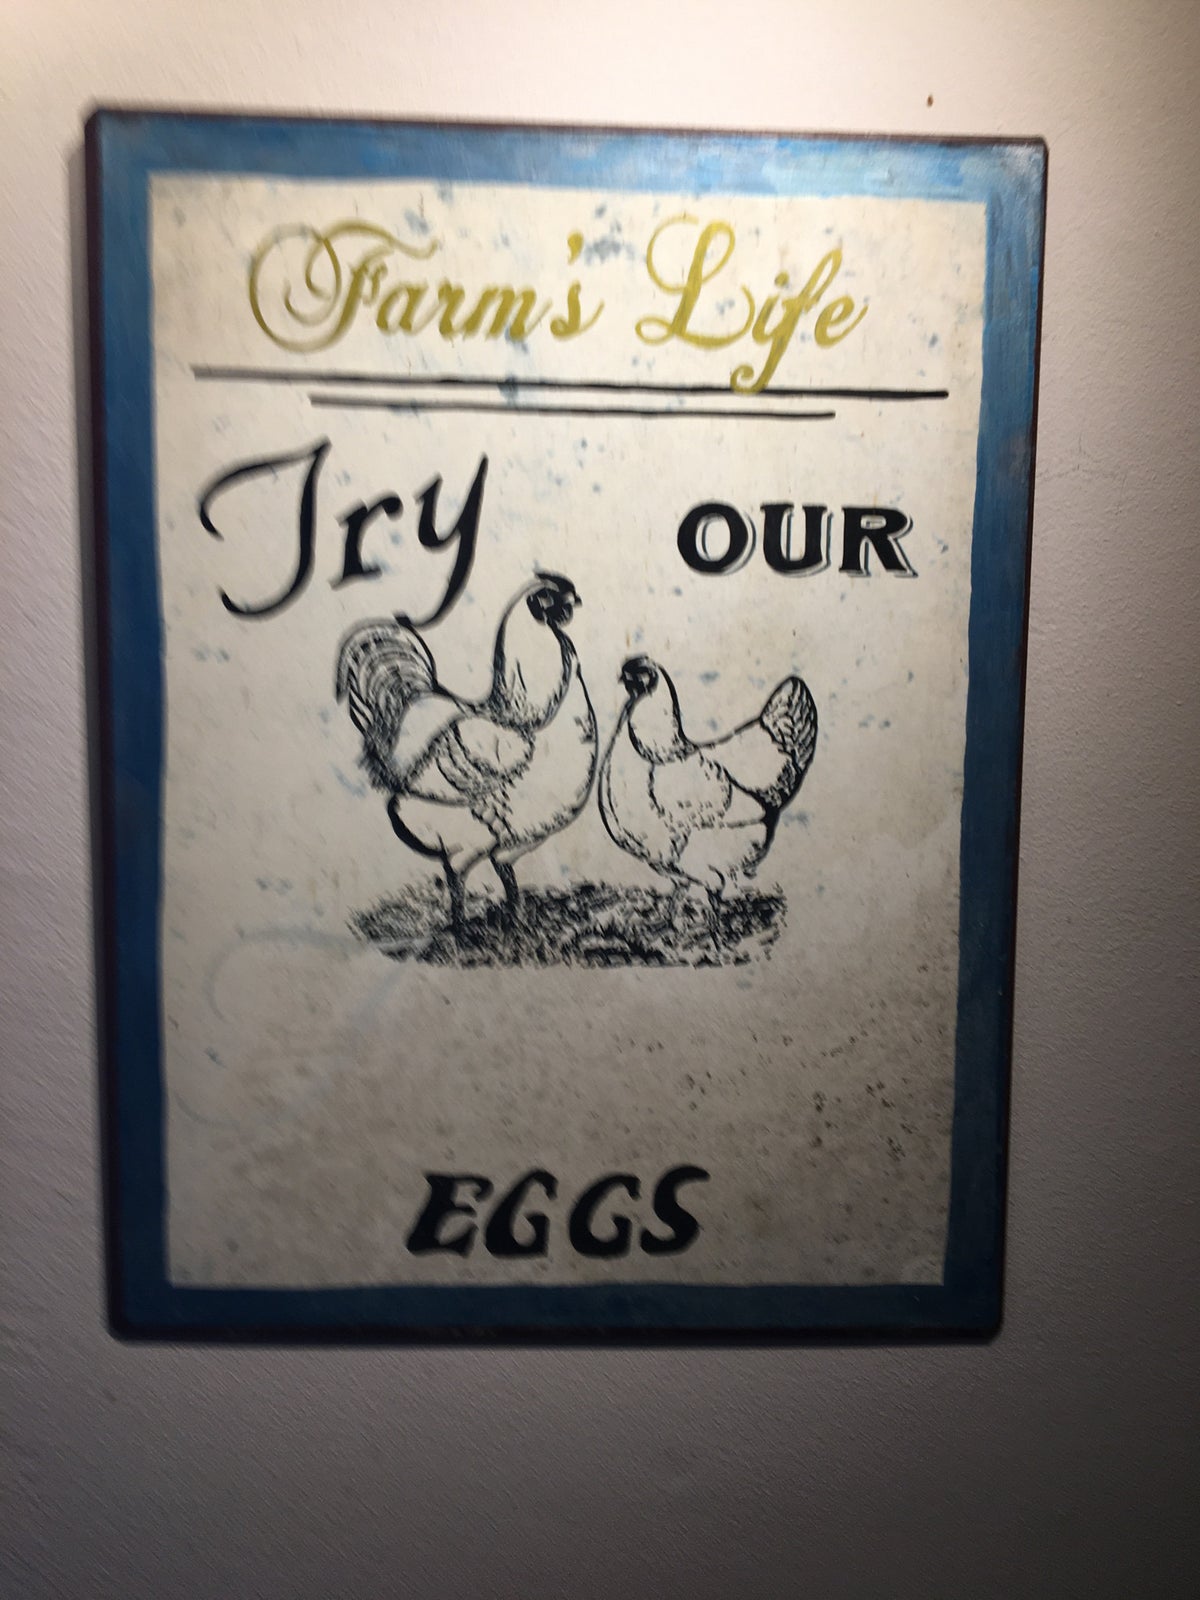 Billede, motiv: Farms life - høns